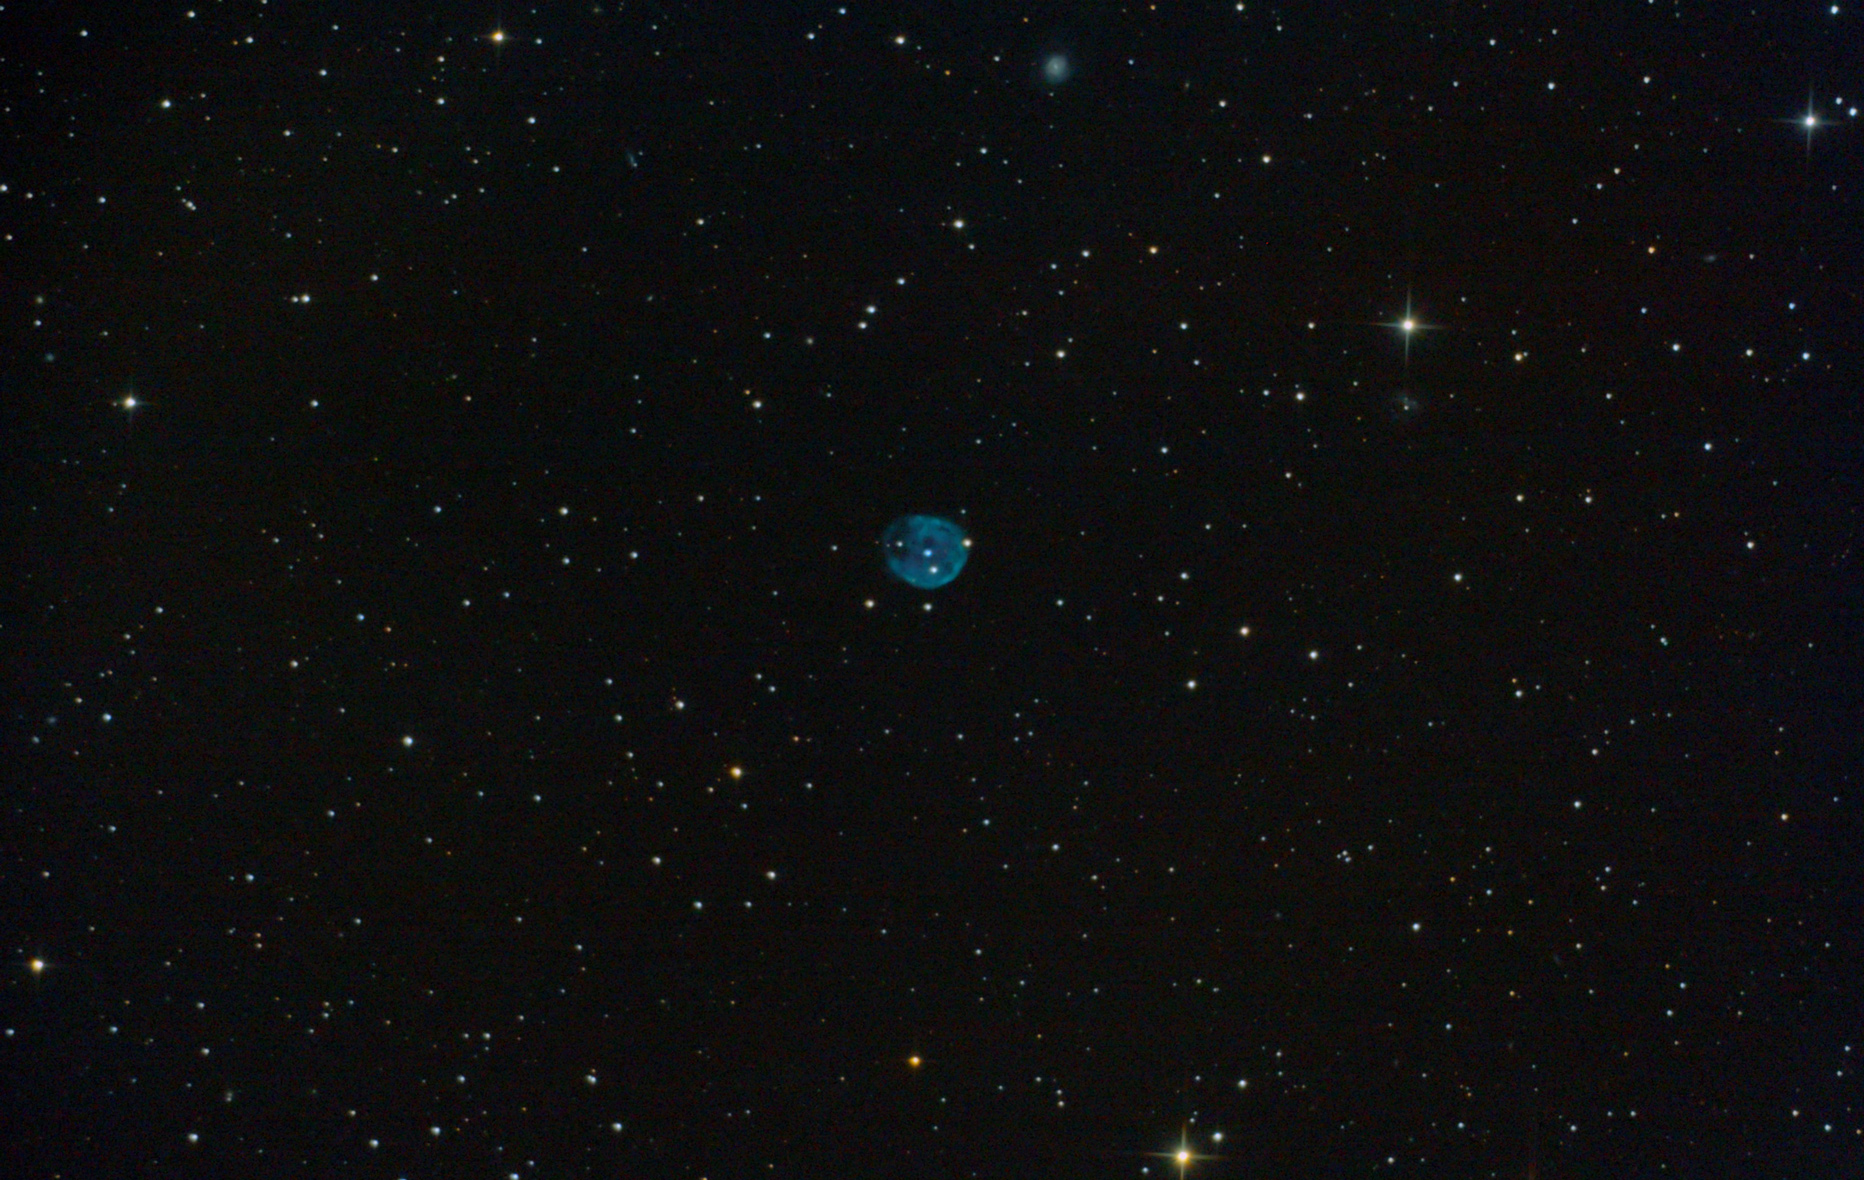 NGC_246_Skull_nebula_15x5min_ISO800_21.10.2017_tet_fitst_png.jpg